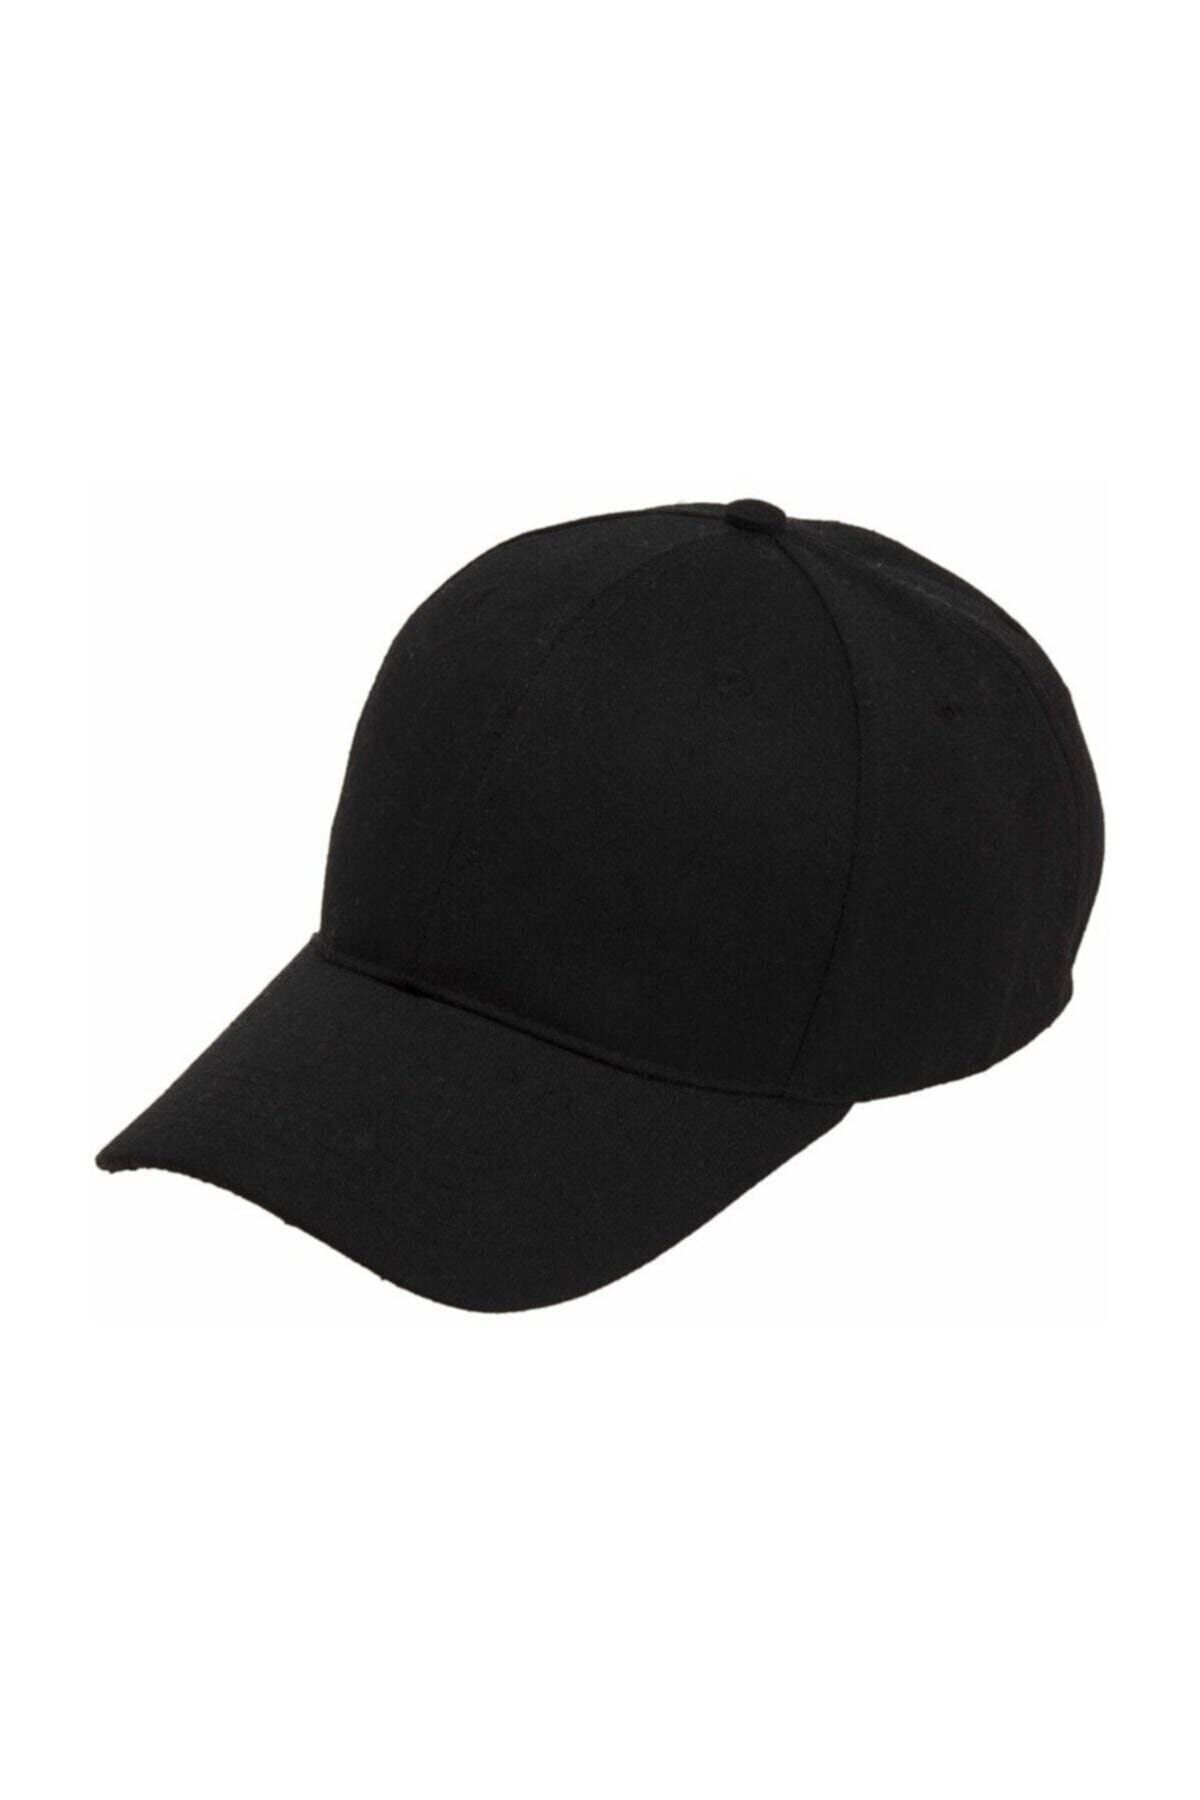 megalaksi Unisex Siyah Kep Arkası Cırtlı Ayarlanabilir Şapka